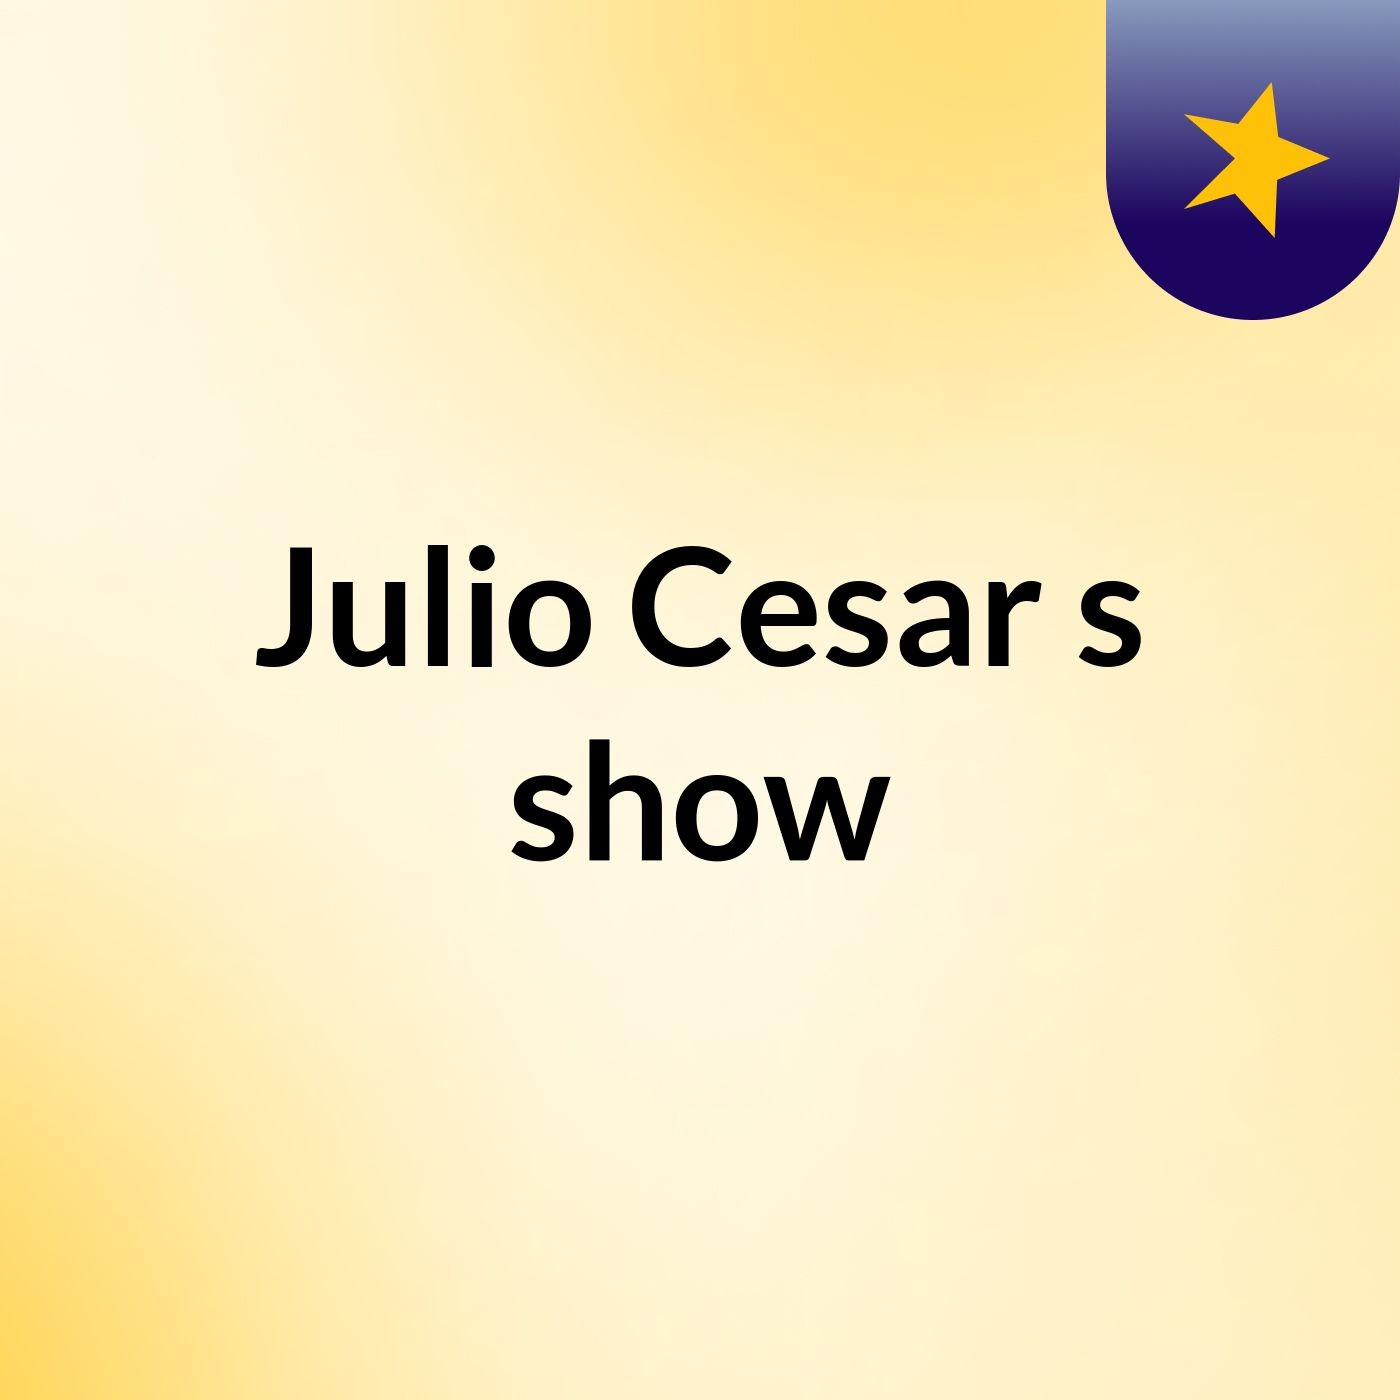 Julio Cesar's show